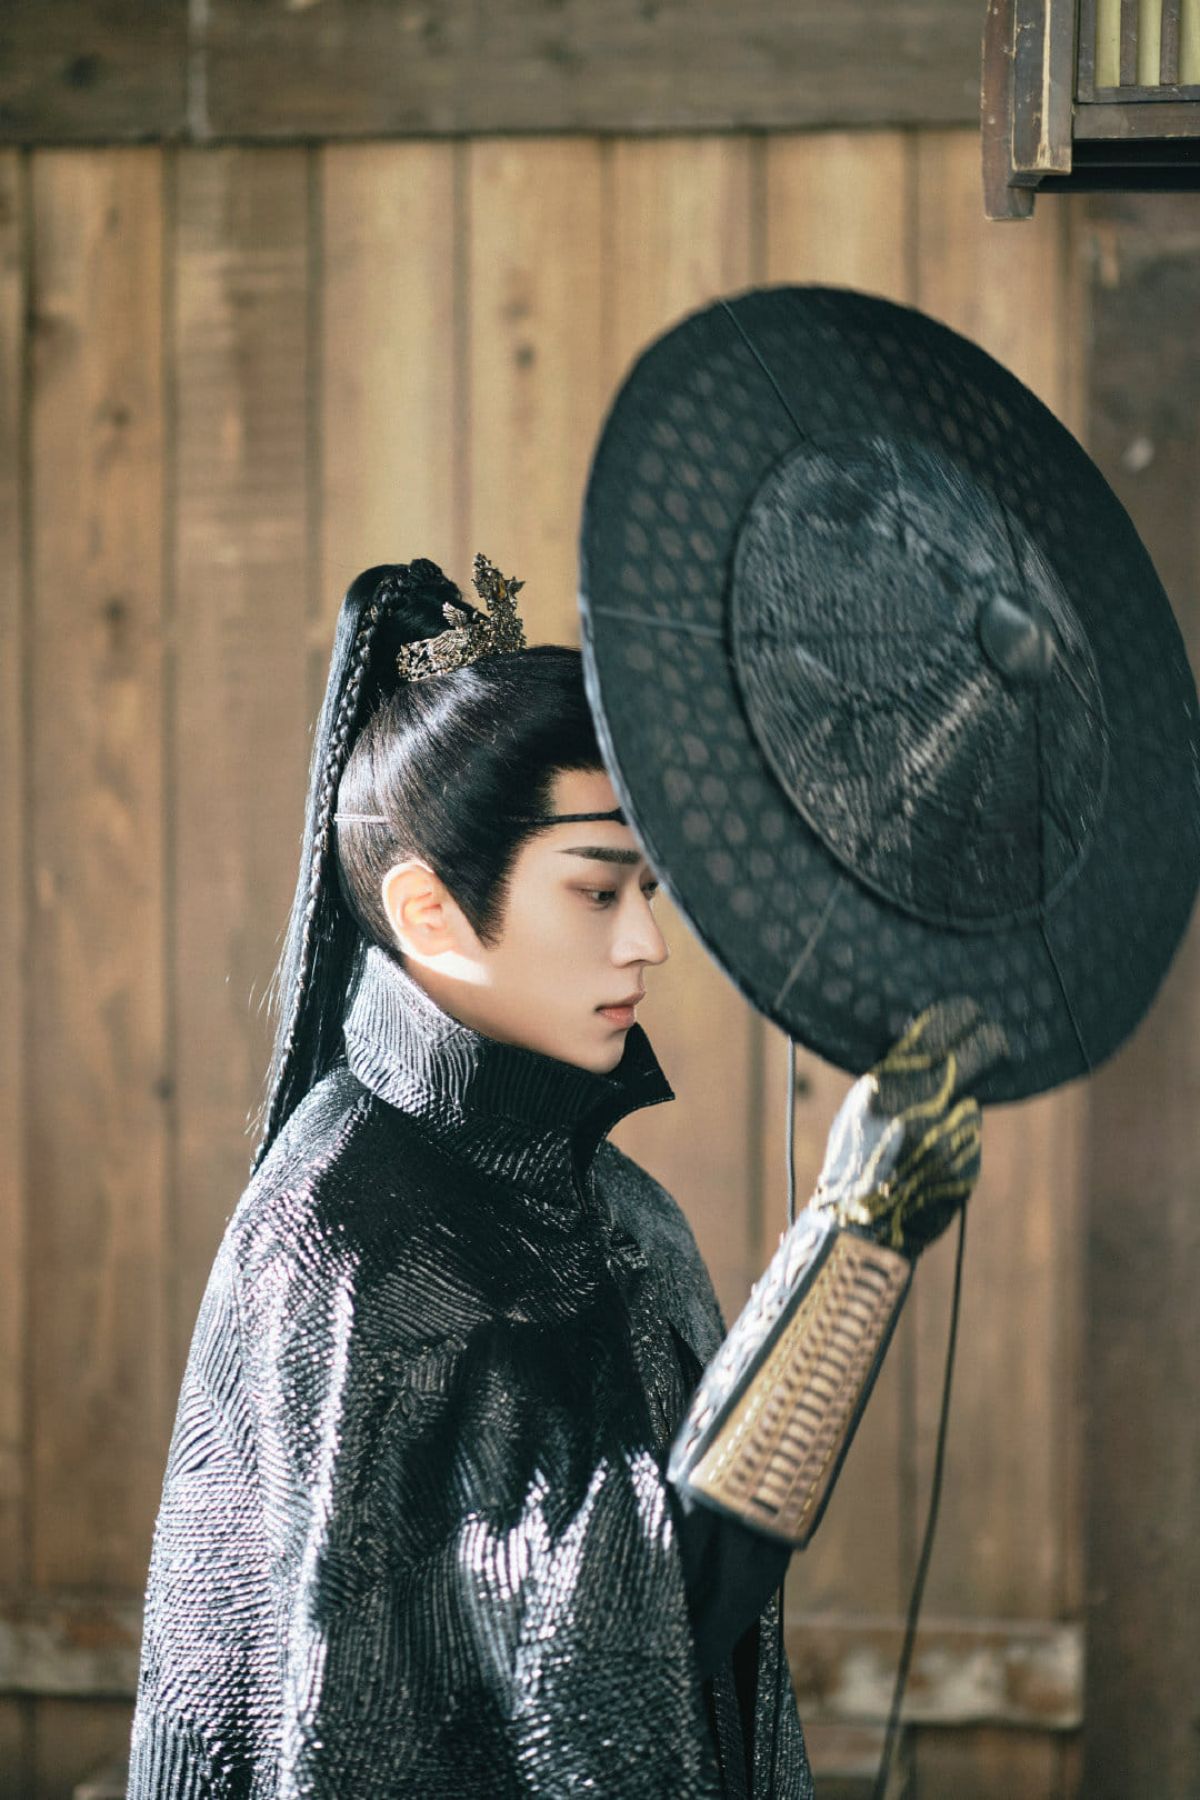 Trong phim, Thừa Lỗi đảm nhận vai Cung Thượng Giác - nhị thiếu gia của Cung Môn, một người tài giỏi nhưng mưu mô, xảo quyệt